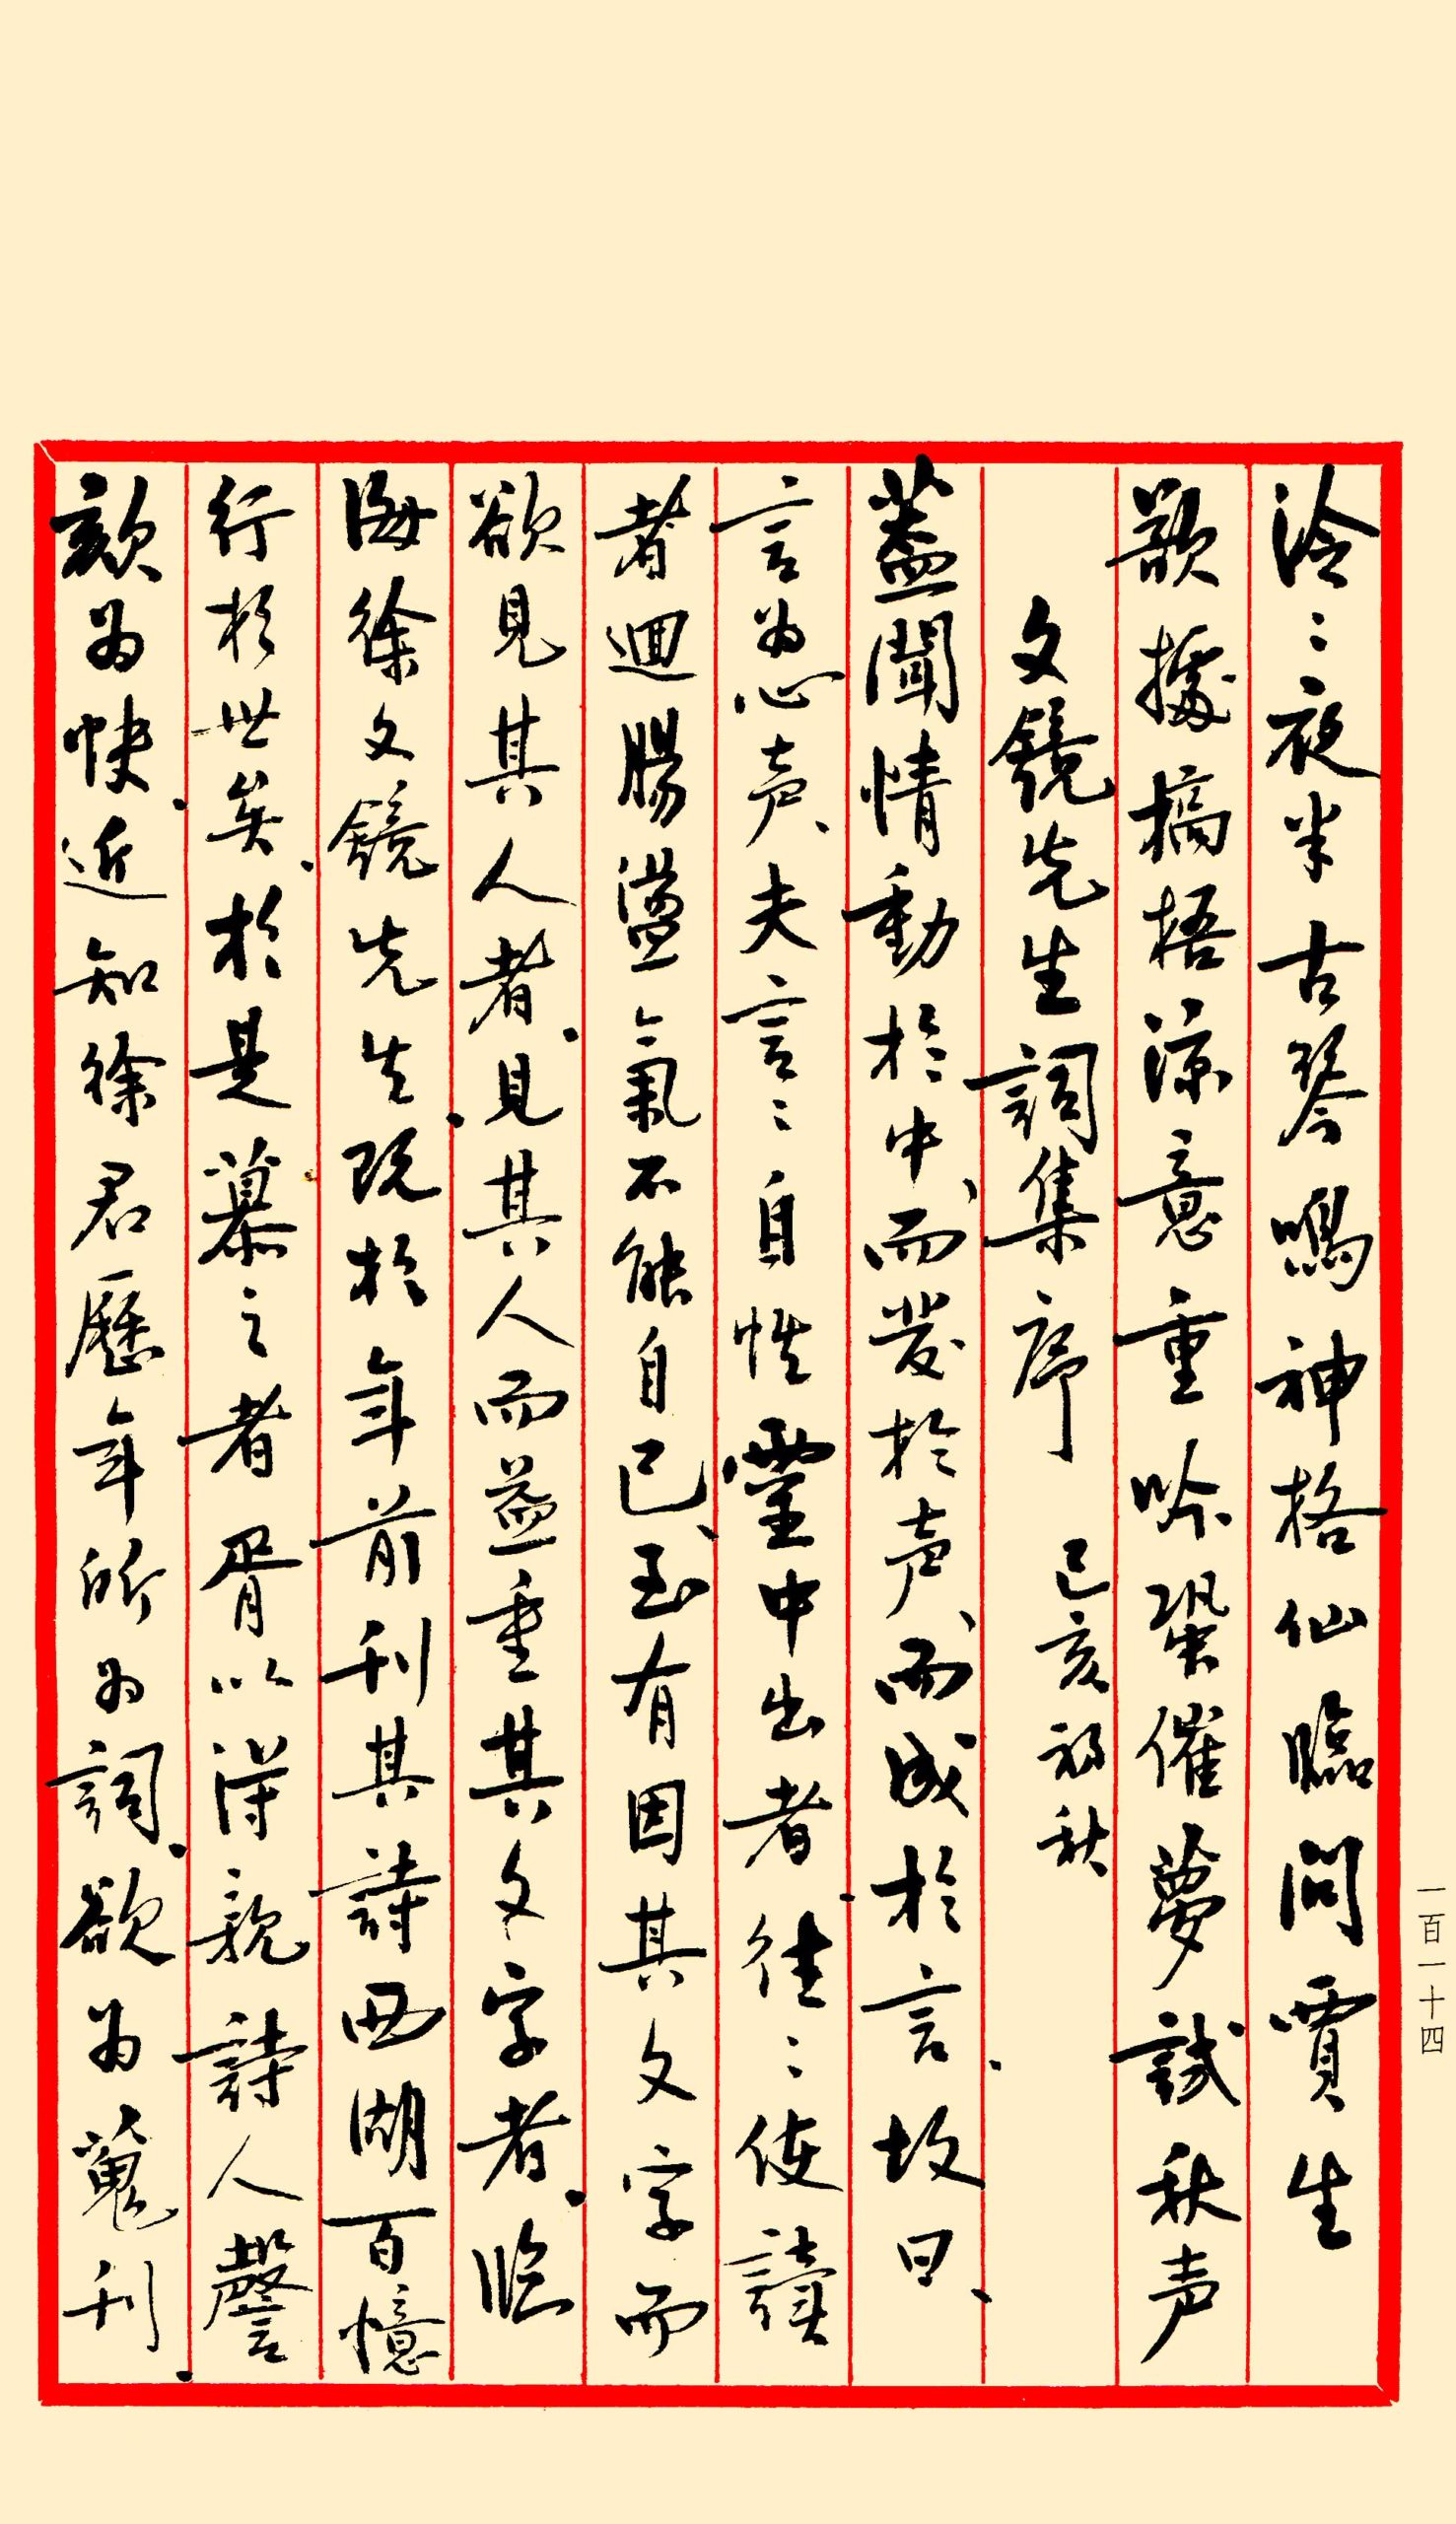 Manuscrit de Cai laoshi - Préface pour les poèmes à chanter de Xu Wenjing - 1